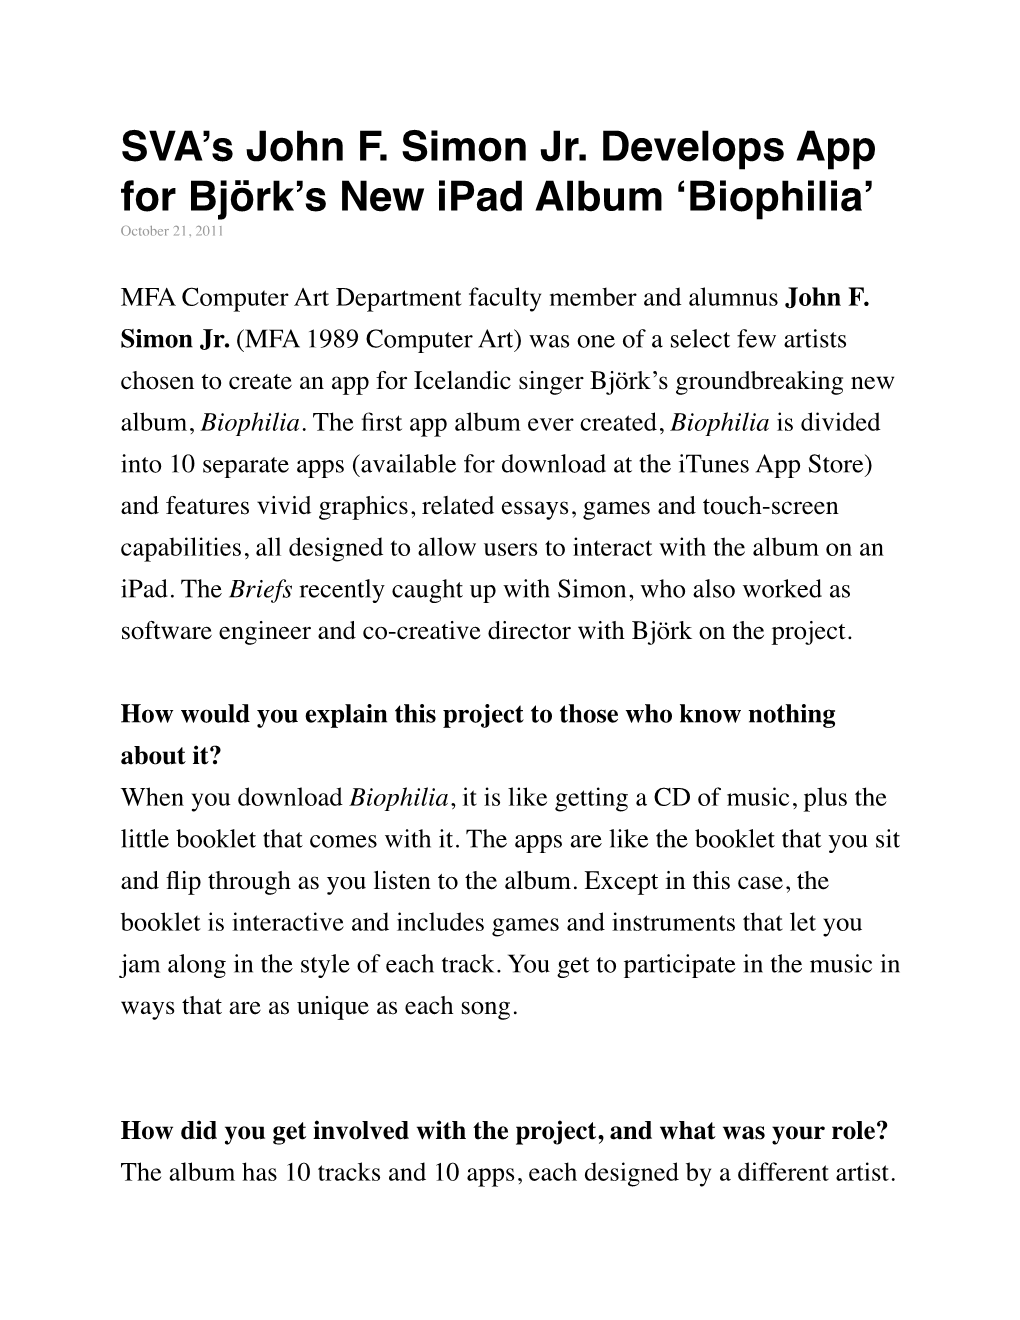 SVA's John F. Simon Jr. Develops App for Björk's New Ipad Album